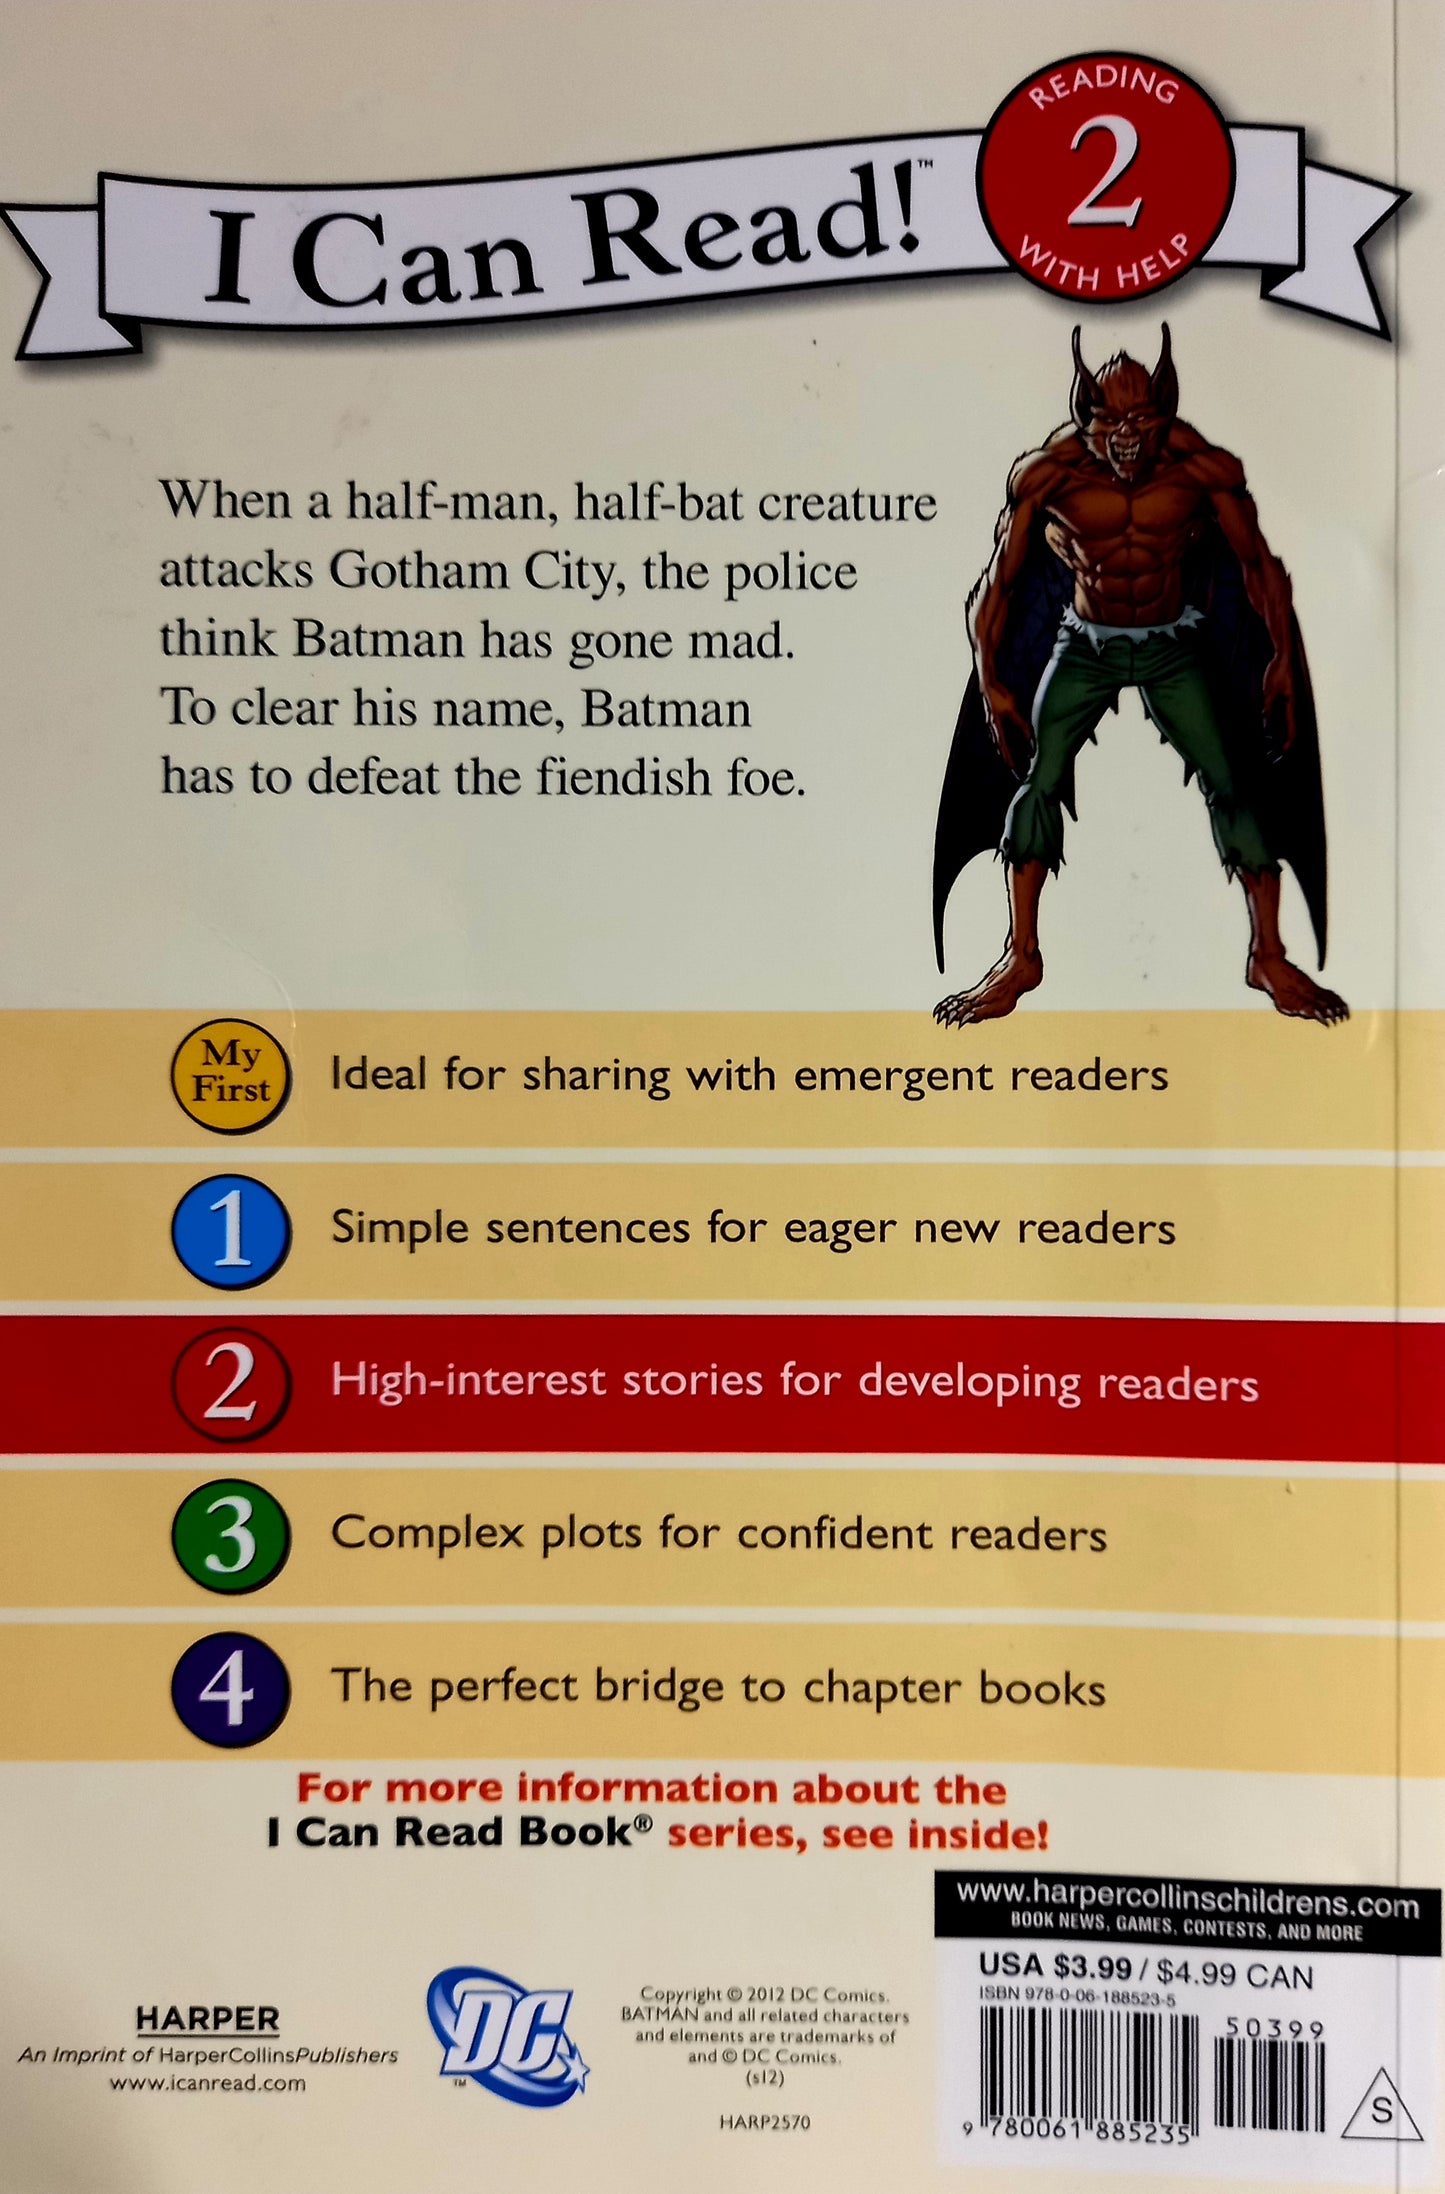 Batman: Batman Versus Man-Bat